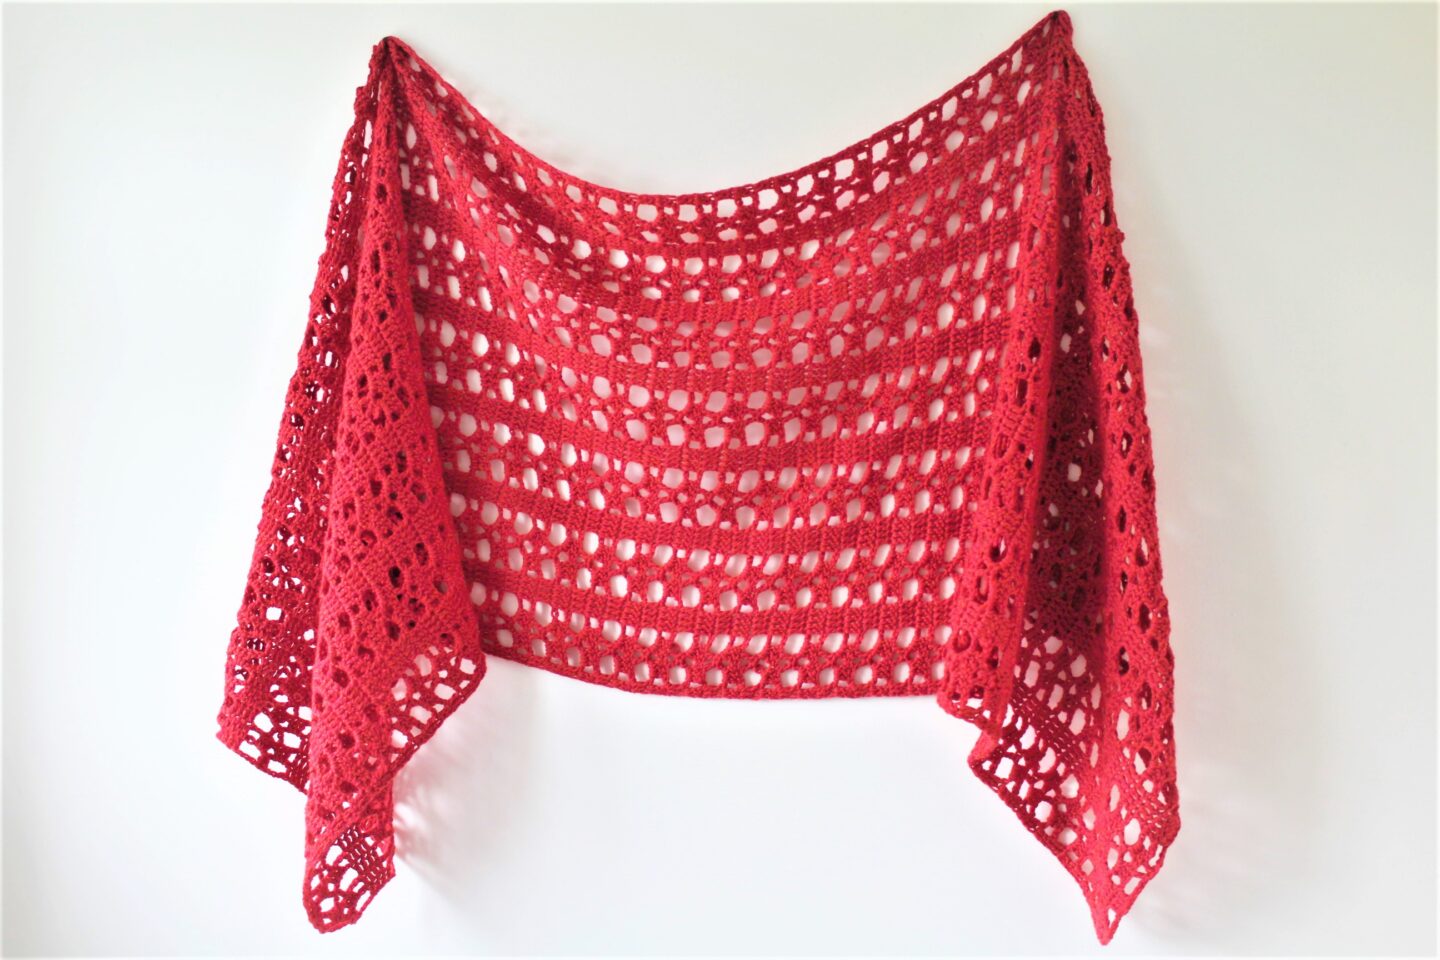 Lucia Sideways Shawl - Free Crochet Pattern